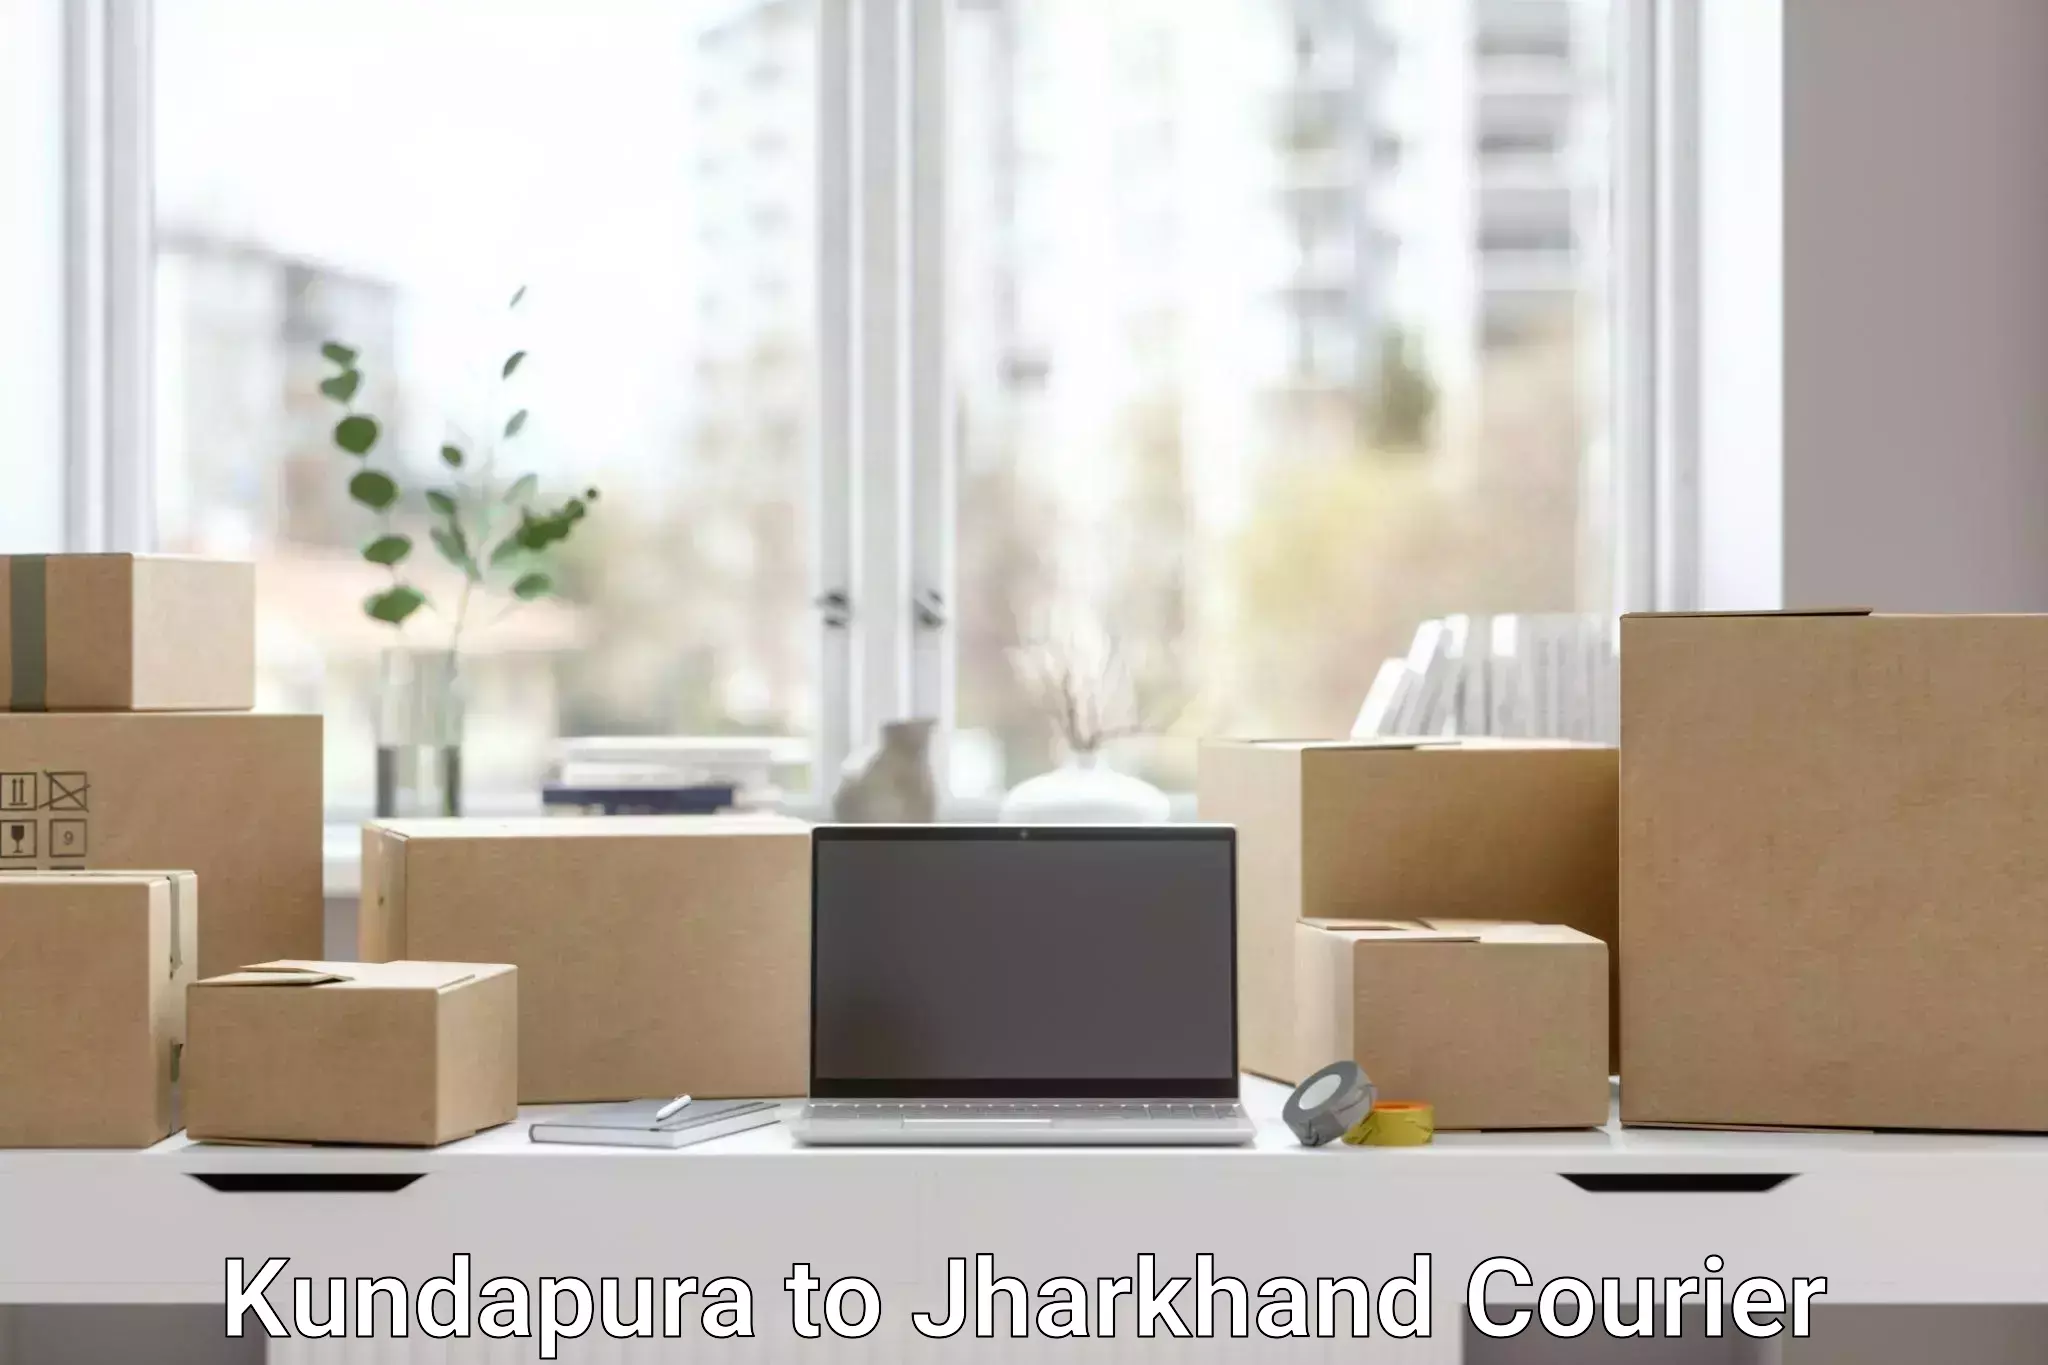 Package tracking Kundapura to Chakradharpur